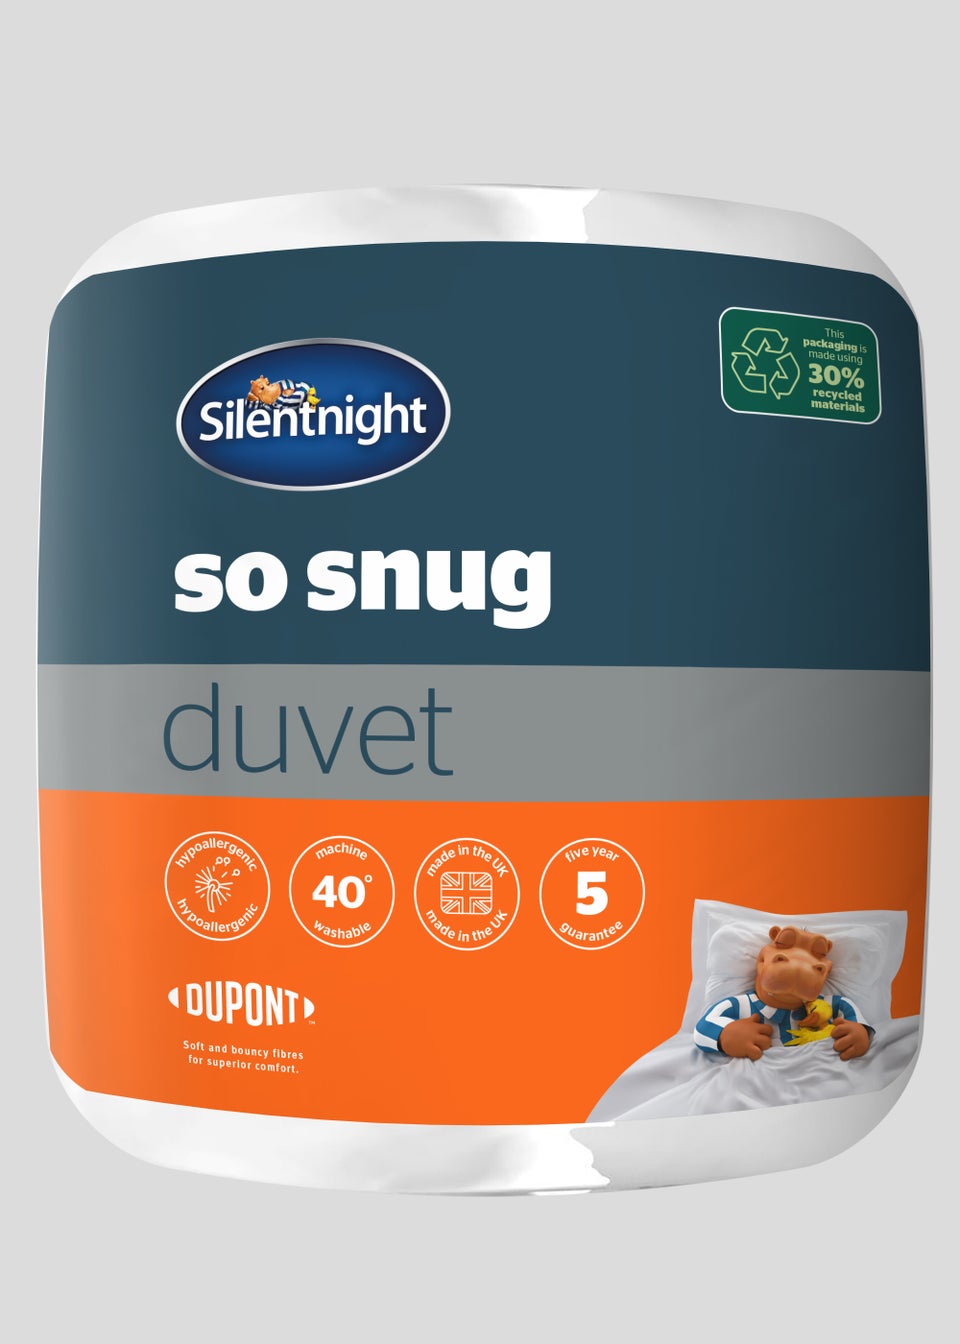 Silentnight So Snug Duvet (13.5 Tog)